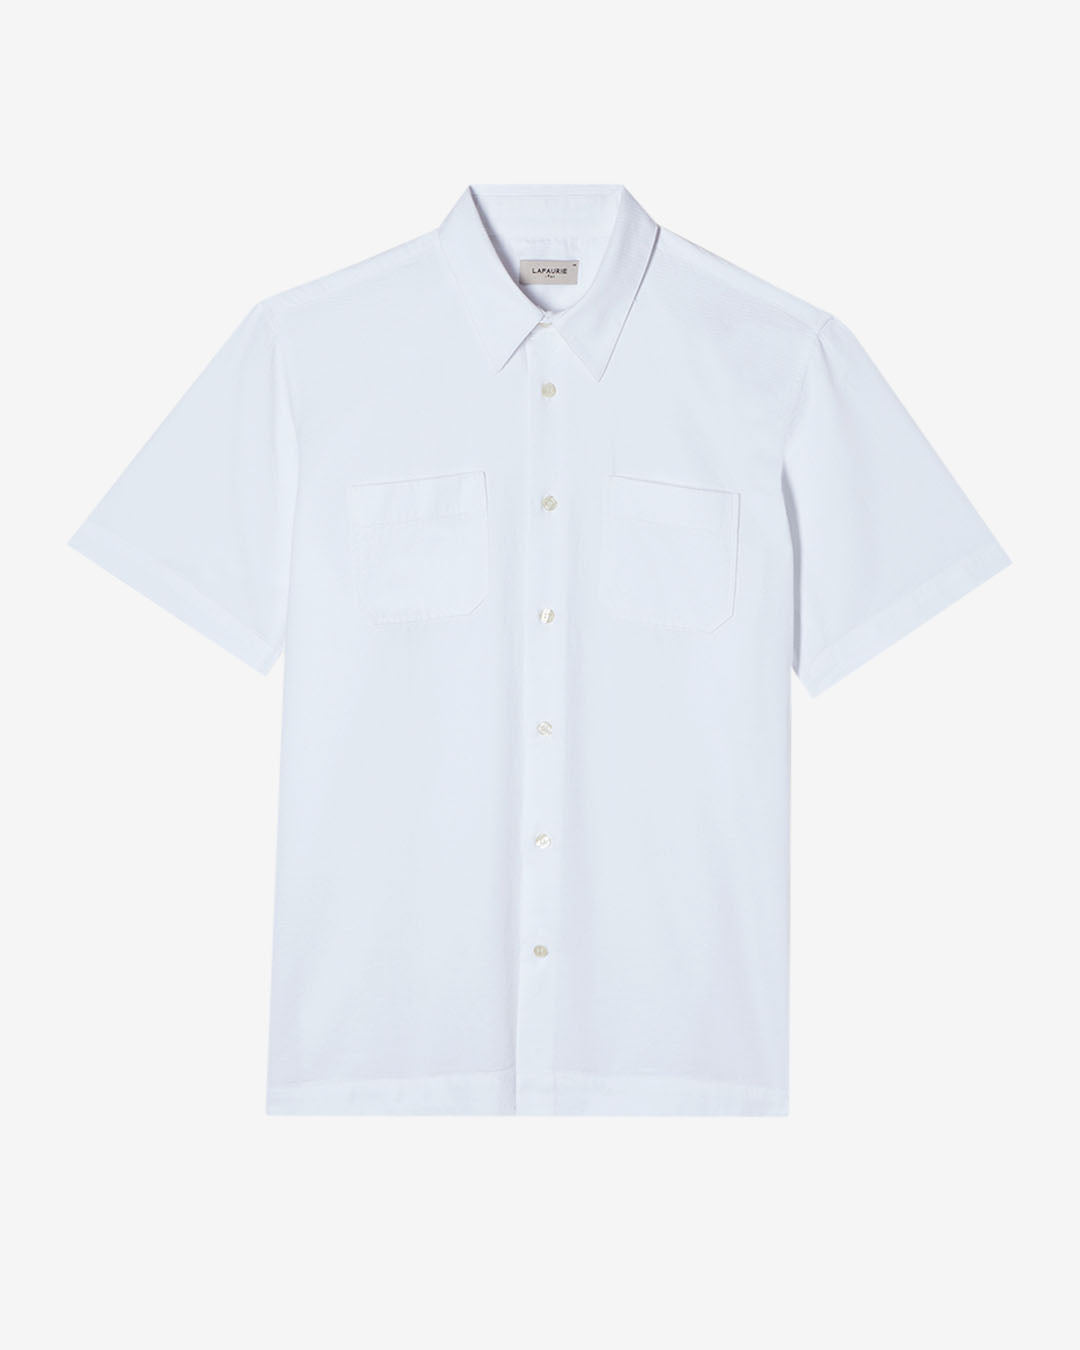 FISTON Shirt - White